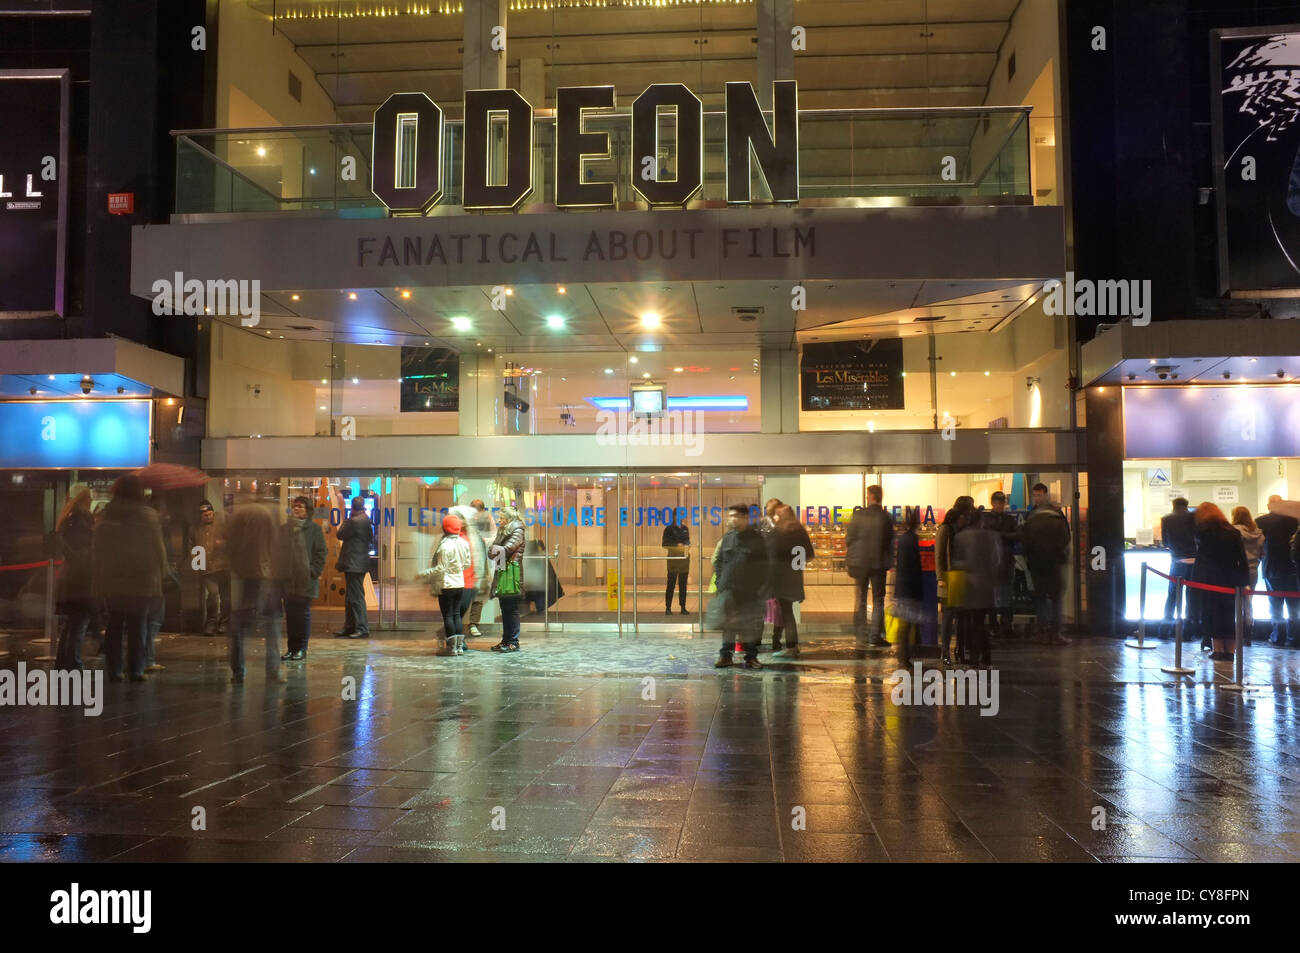 Cinéma Odéon avec les gens se sont réunis à l'extérieur dans la région de Leicester Square, Londres Banque D'Images